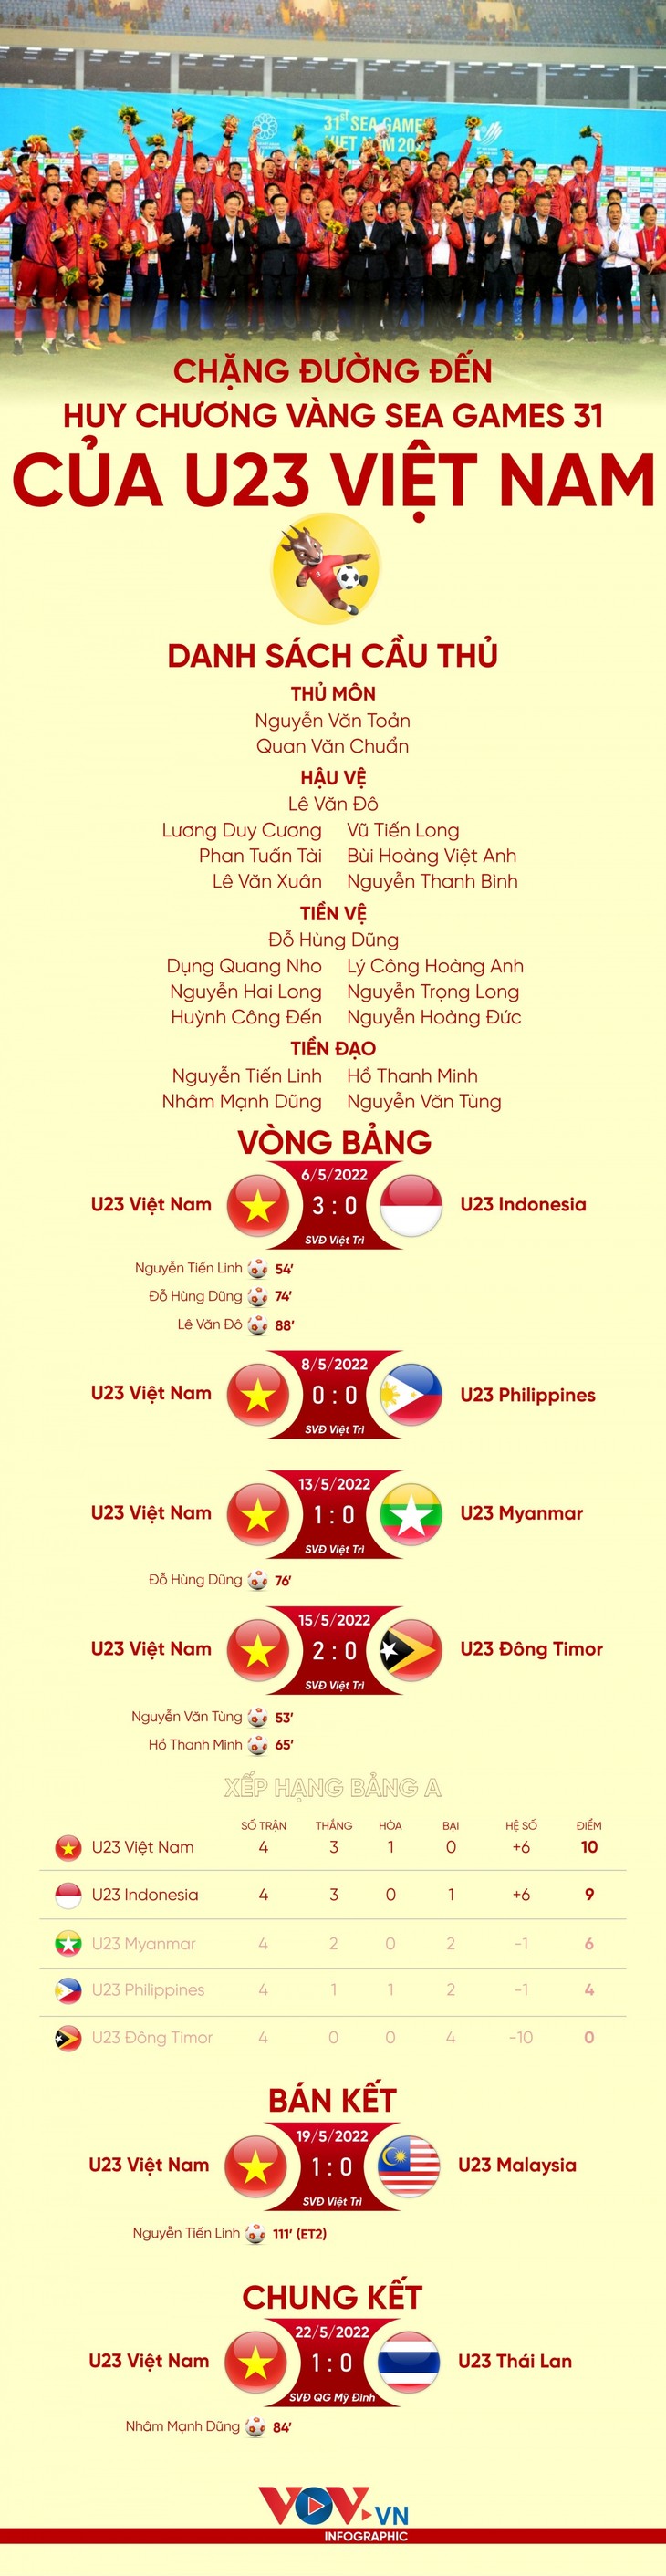 Chặng đường bảo vệ thành công HCV của đội tuyển U23 Việt Nam - ảnh 1